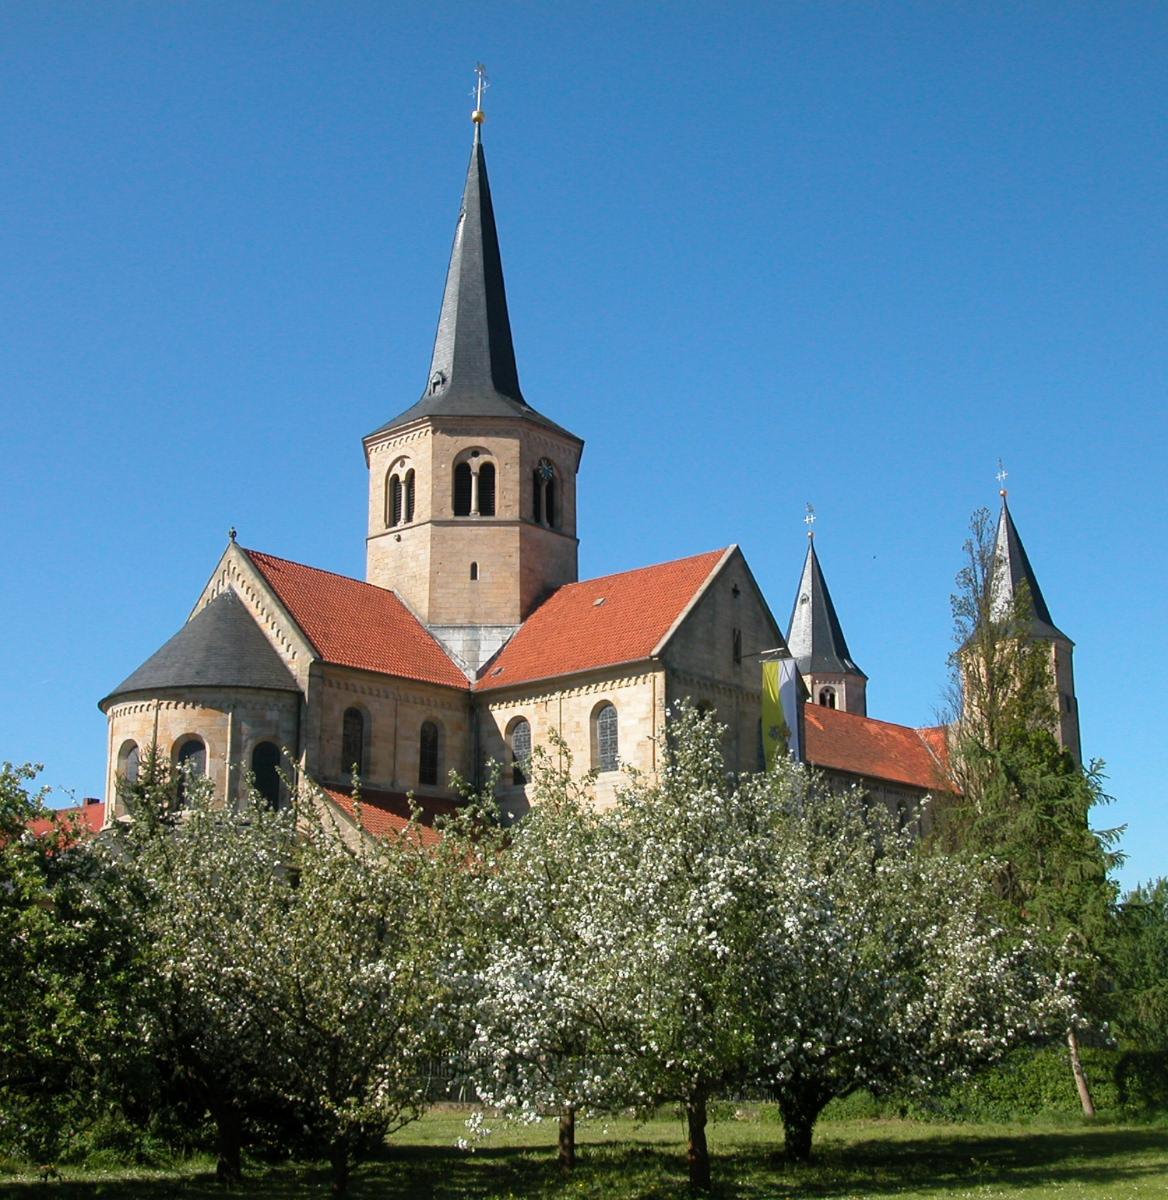 Saint Godehard's Church 